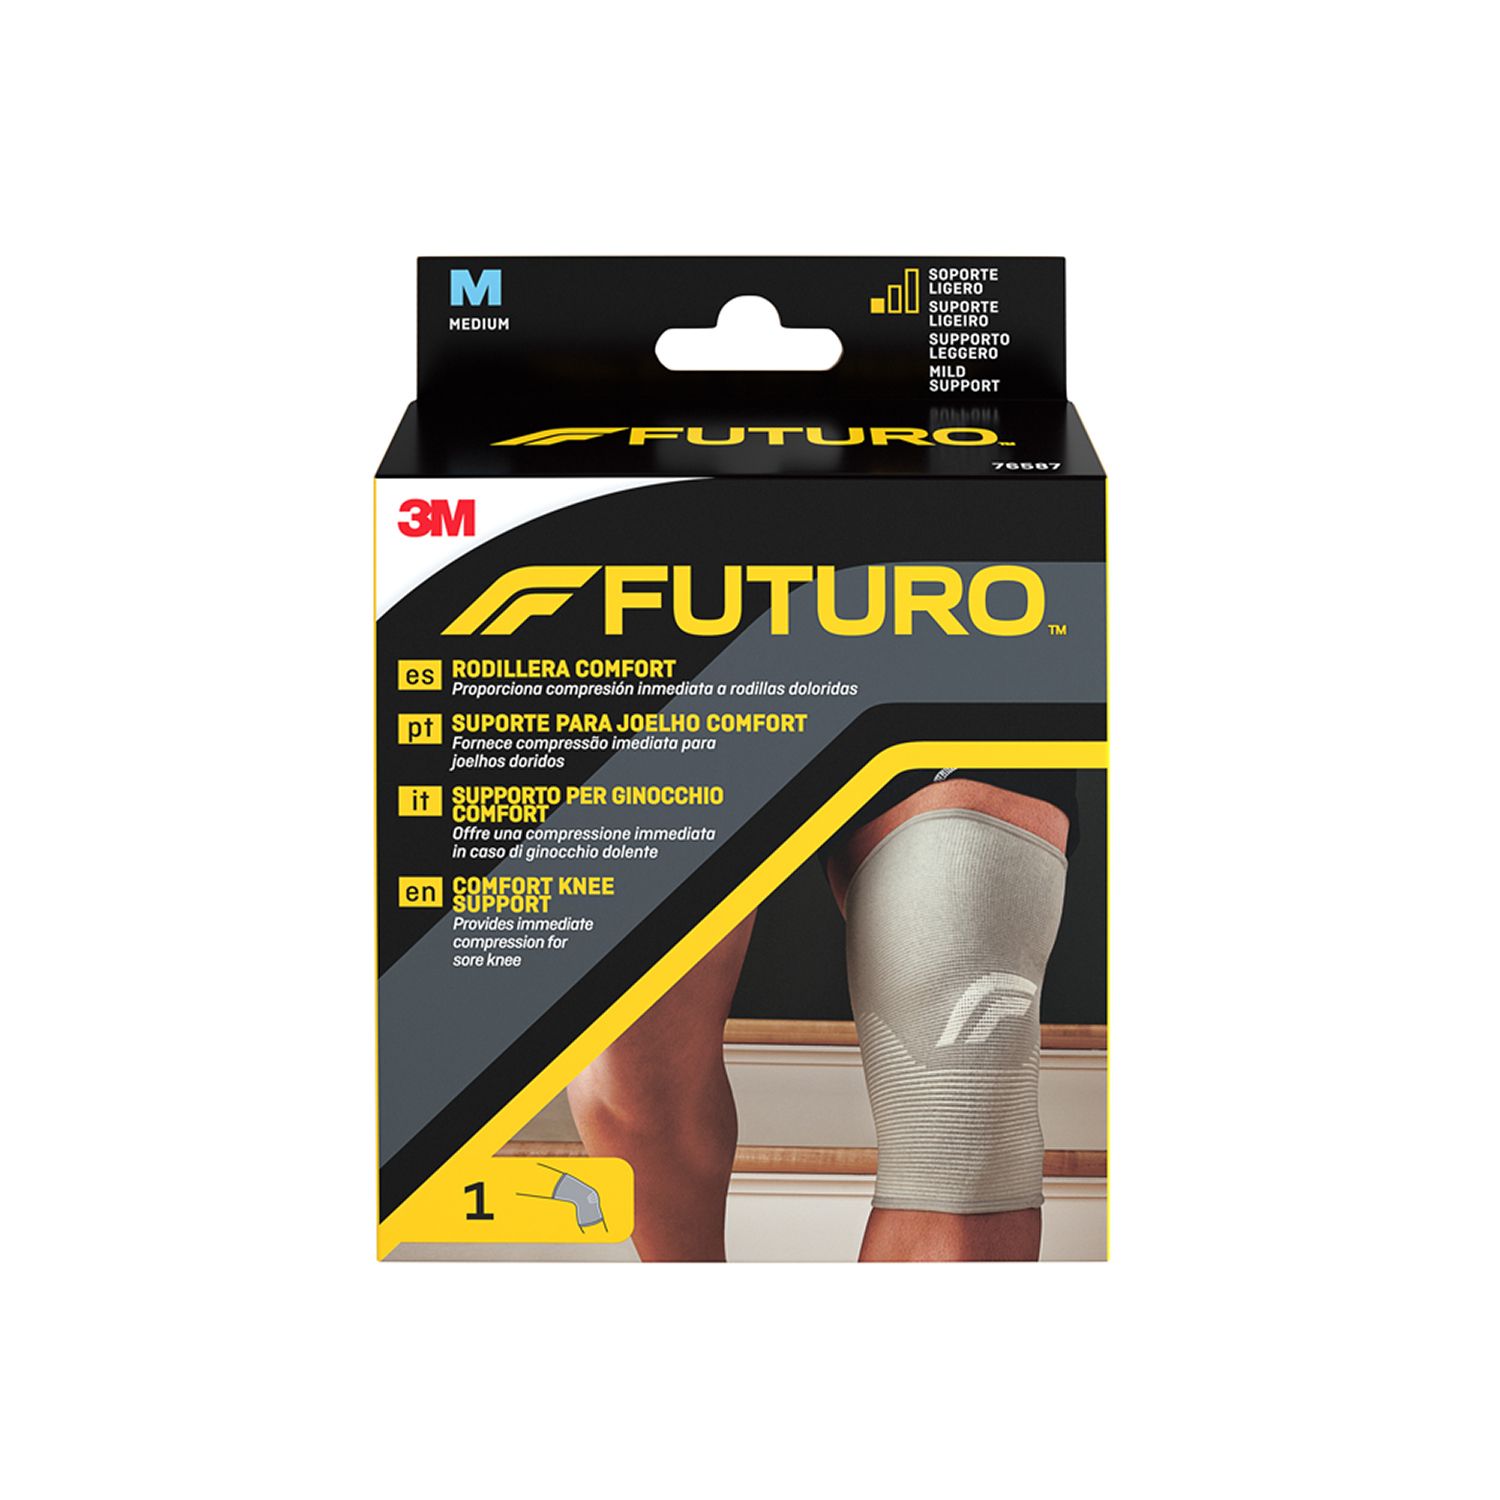 FUTURO™ Supporto per ginocchio comfort  M